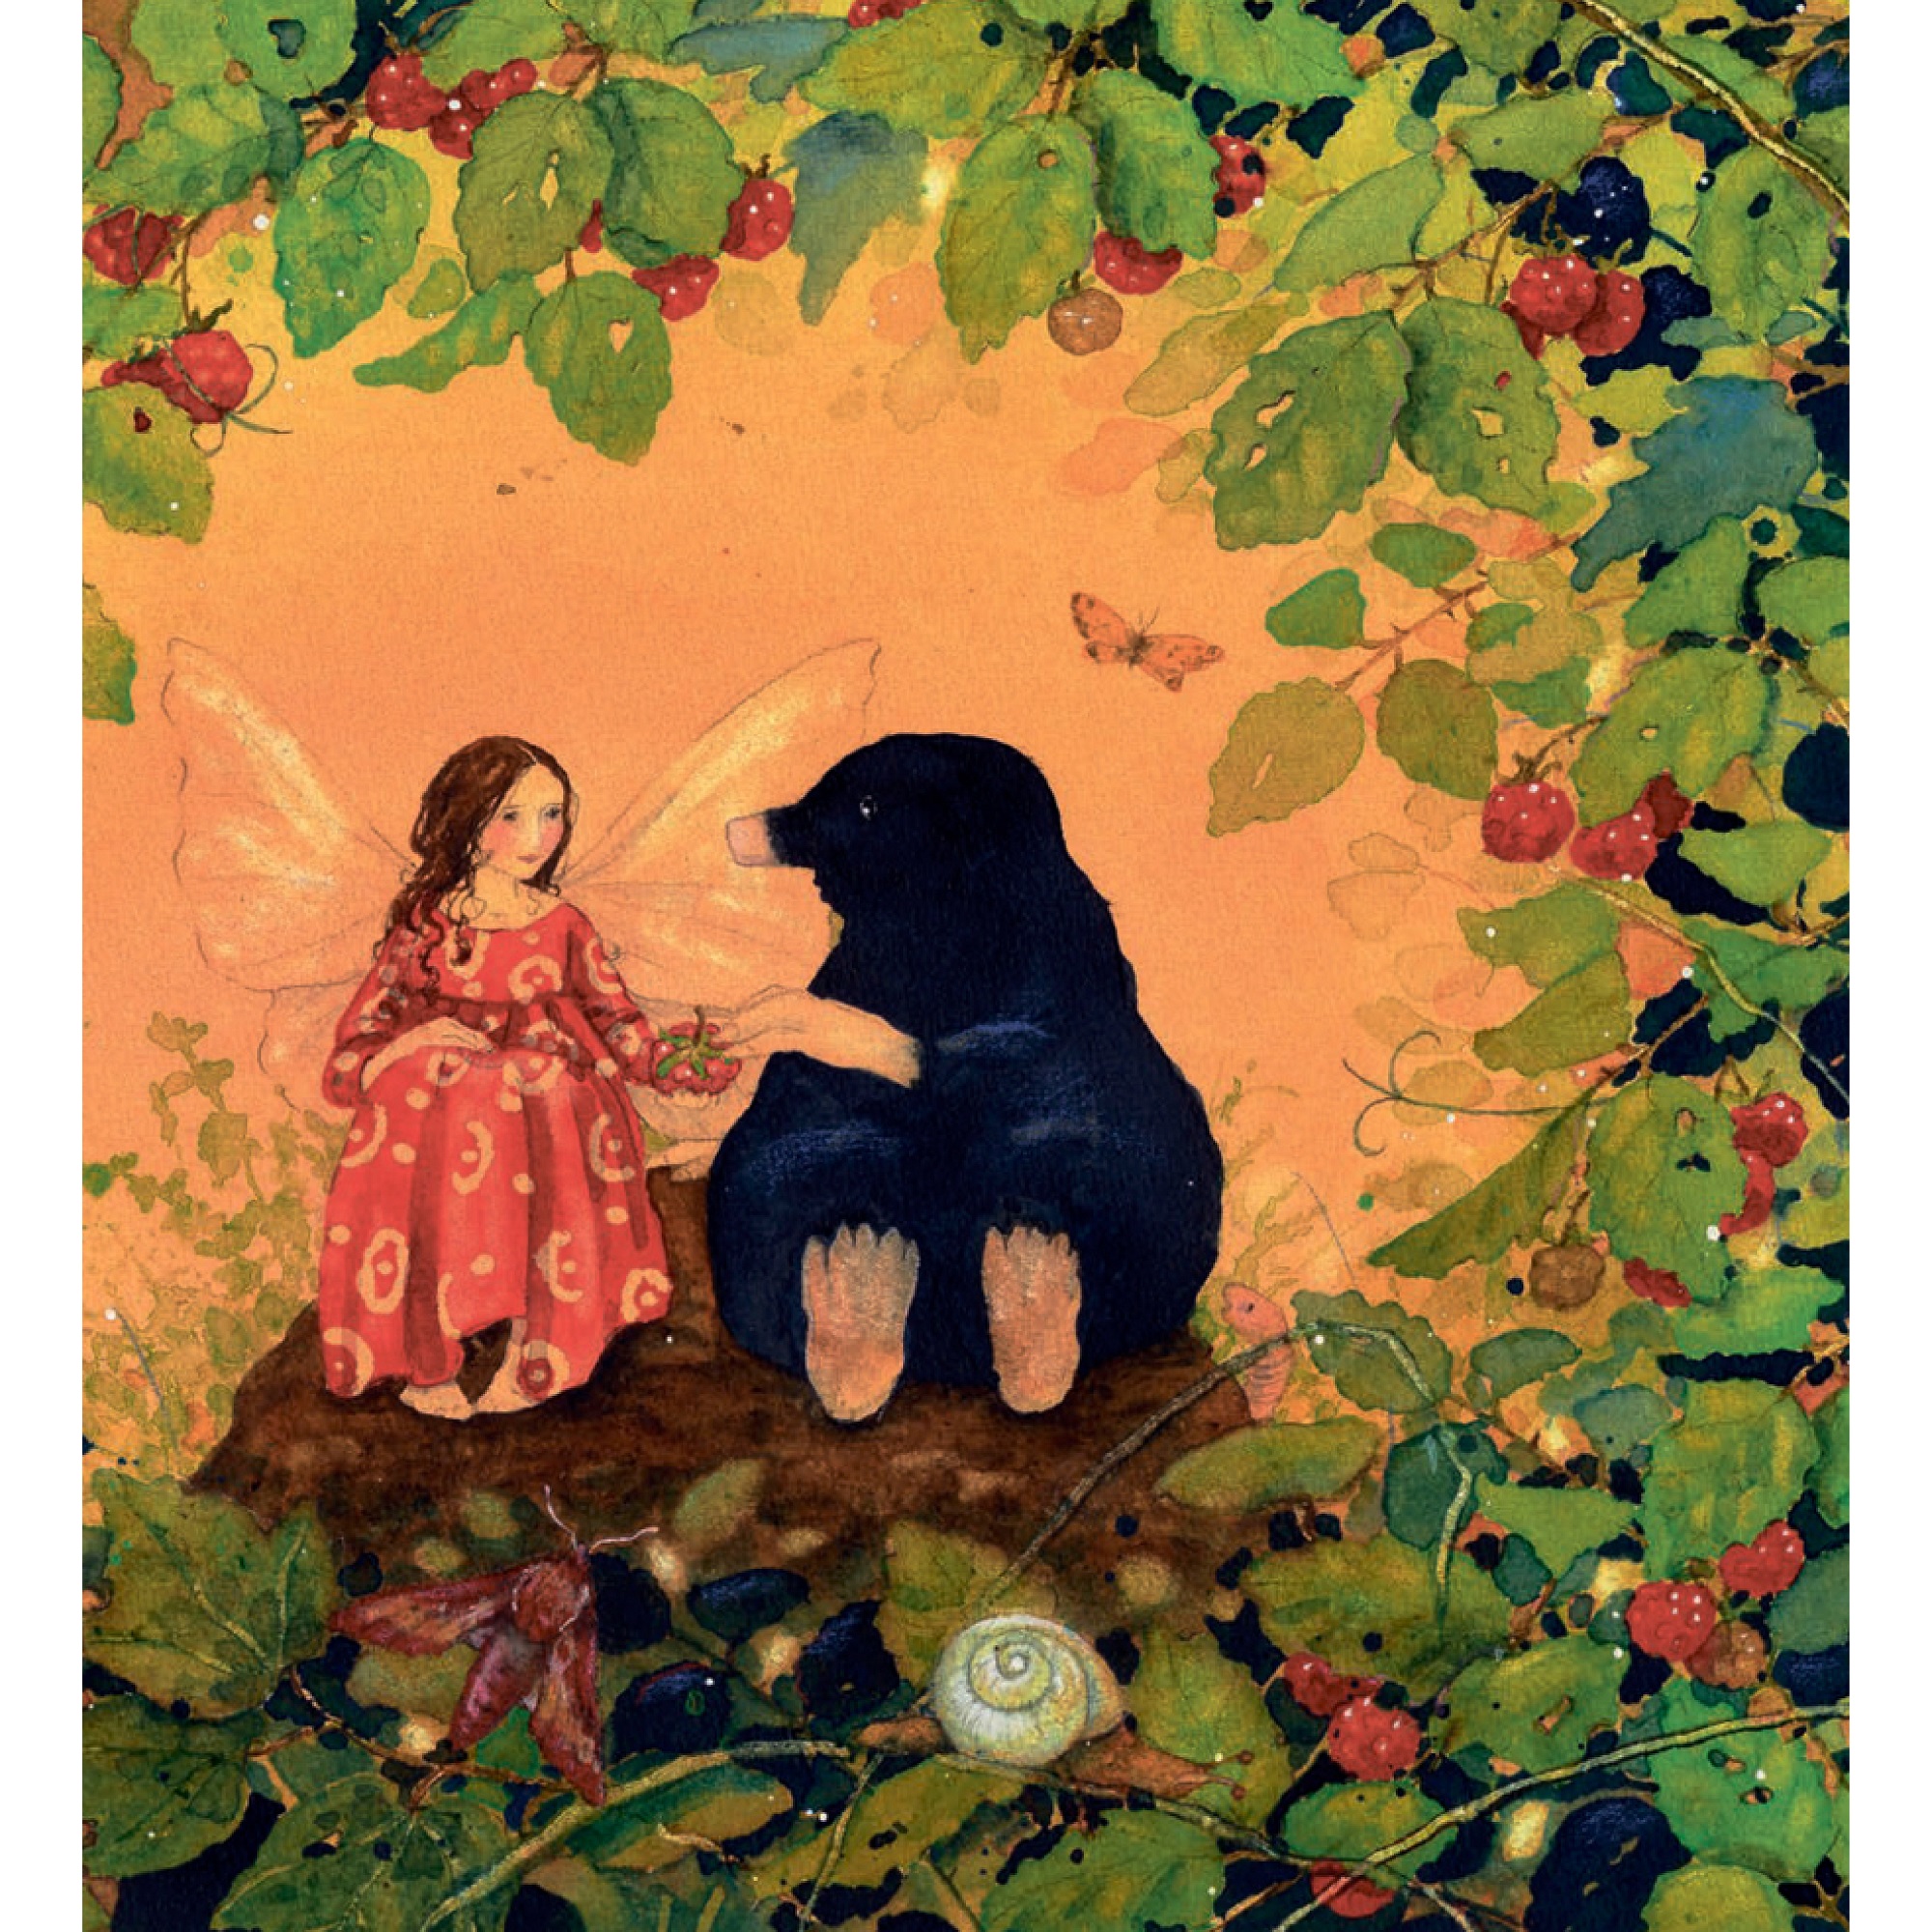 Книга Добрая книга Маленькая фея загадывает желание. История о дружбе и исполнении желаний - фото 10